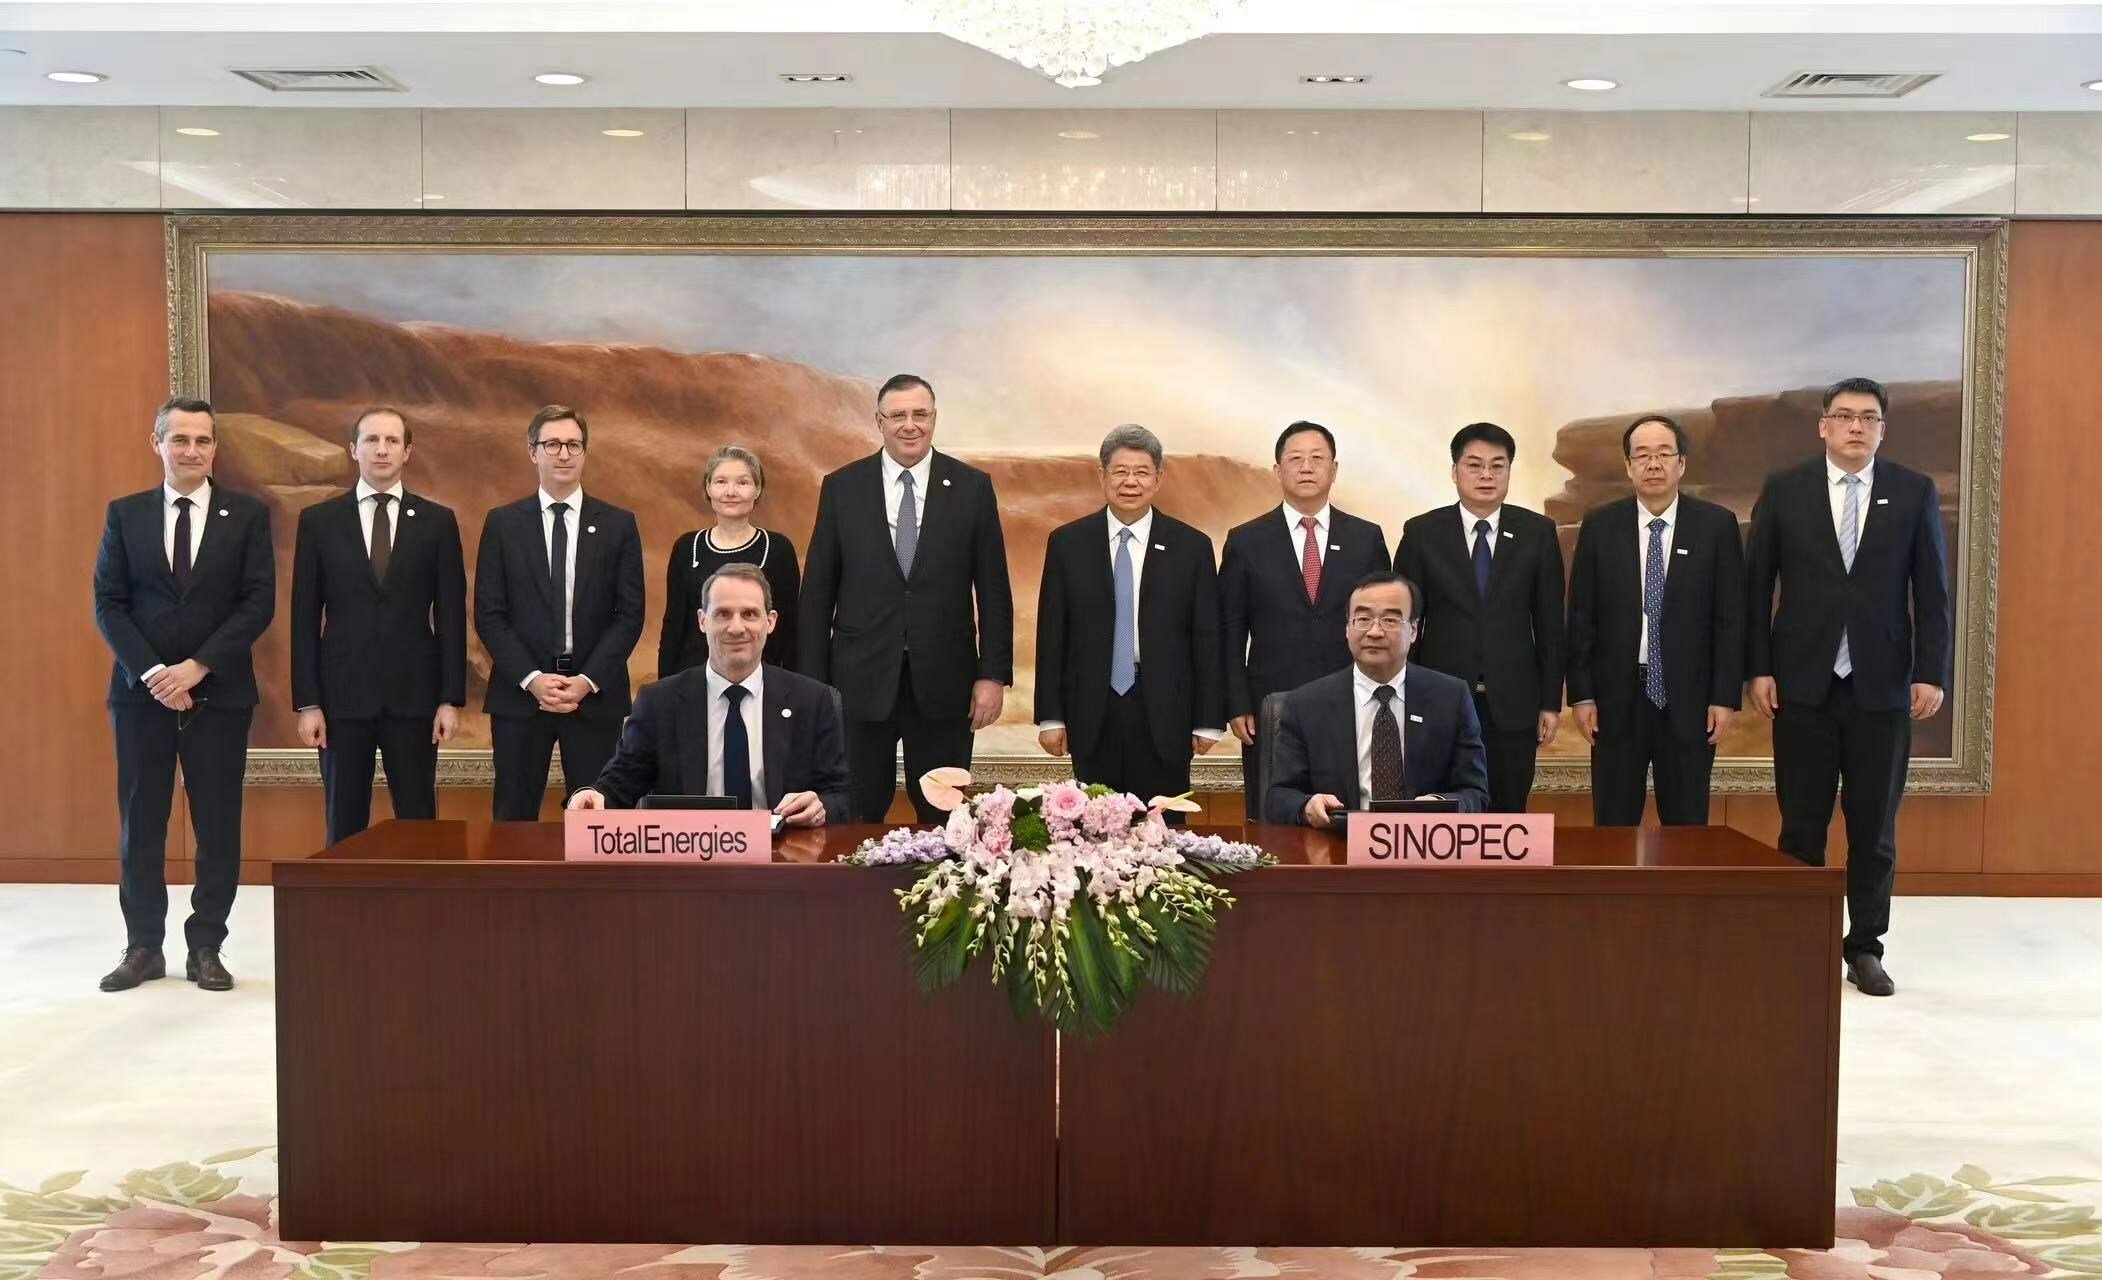 Sinopec e TotalEnergies formam joint venture para produzir SAF na China (Foto: Divulgação Sinopec)